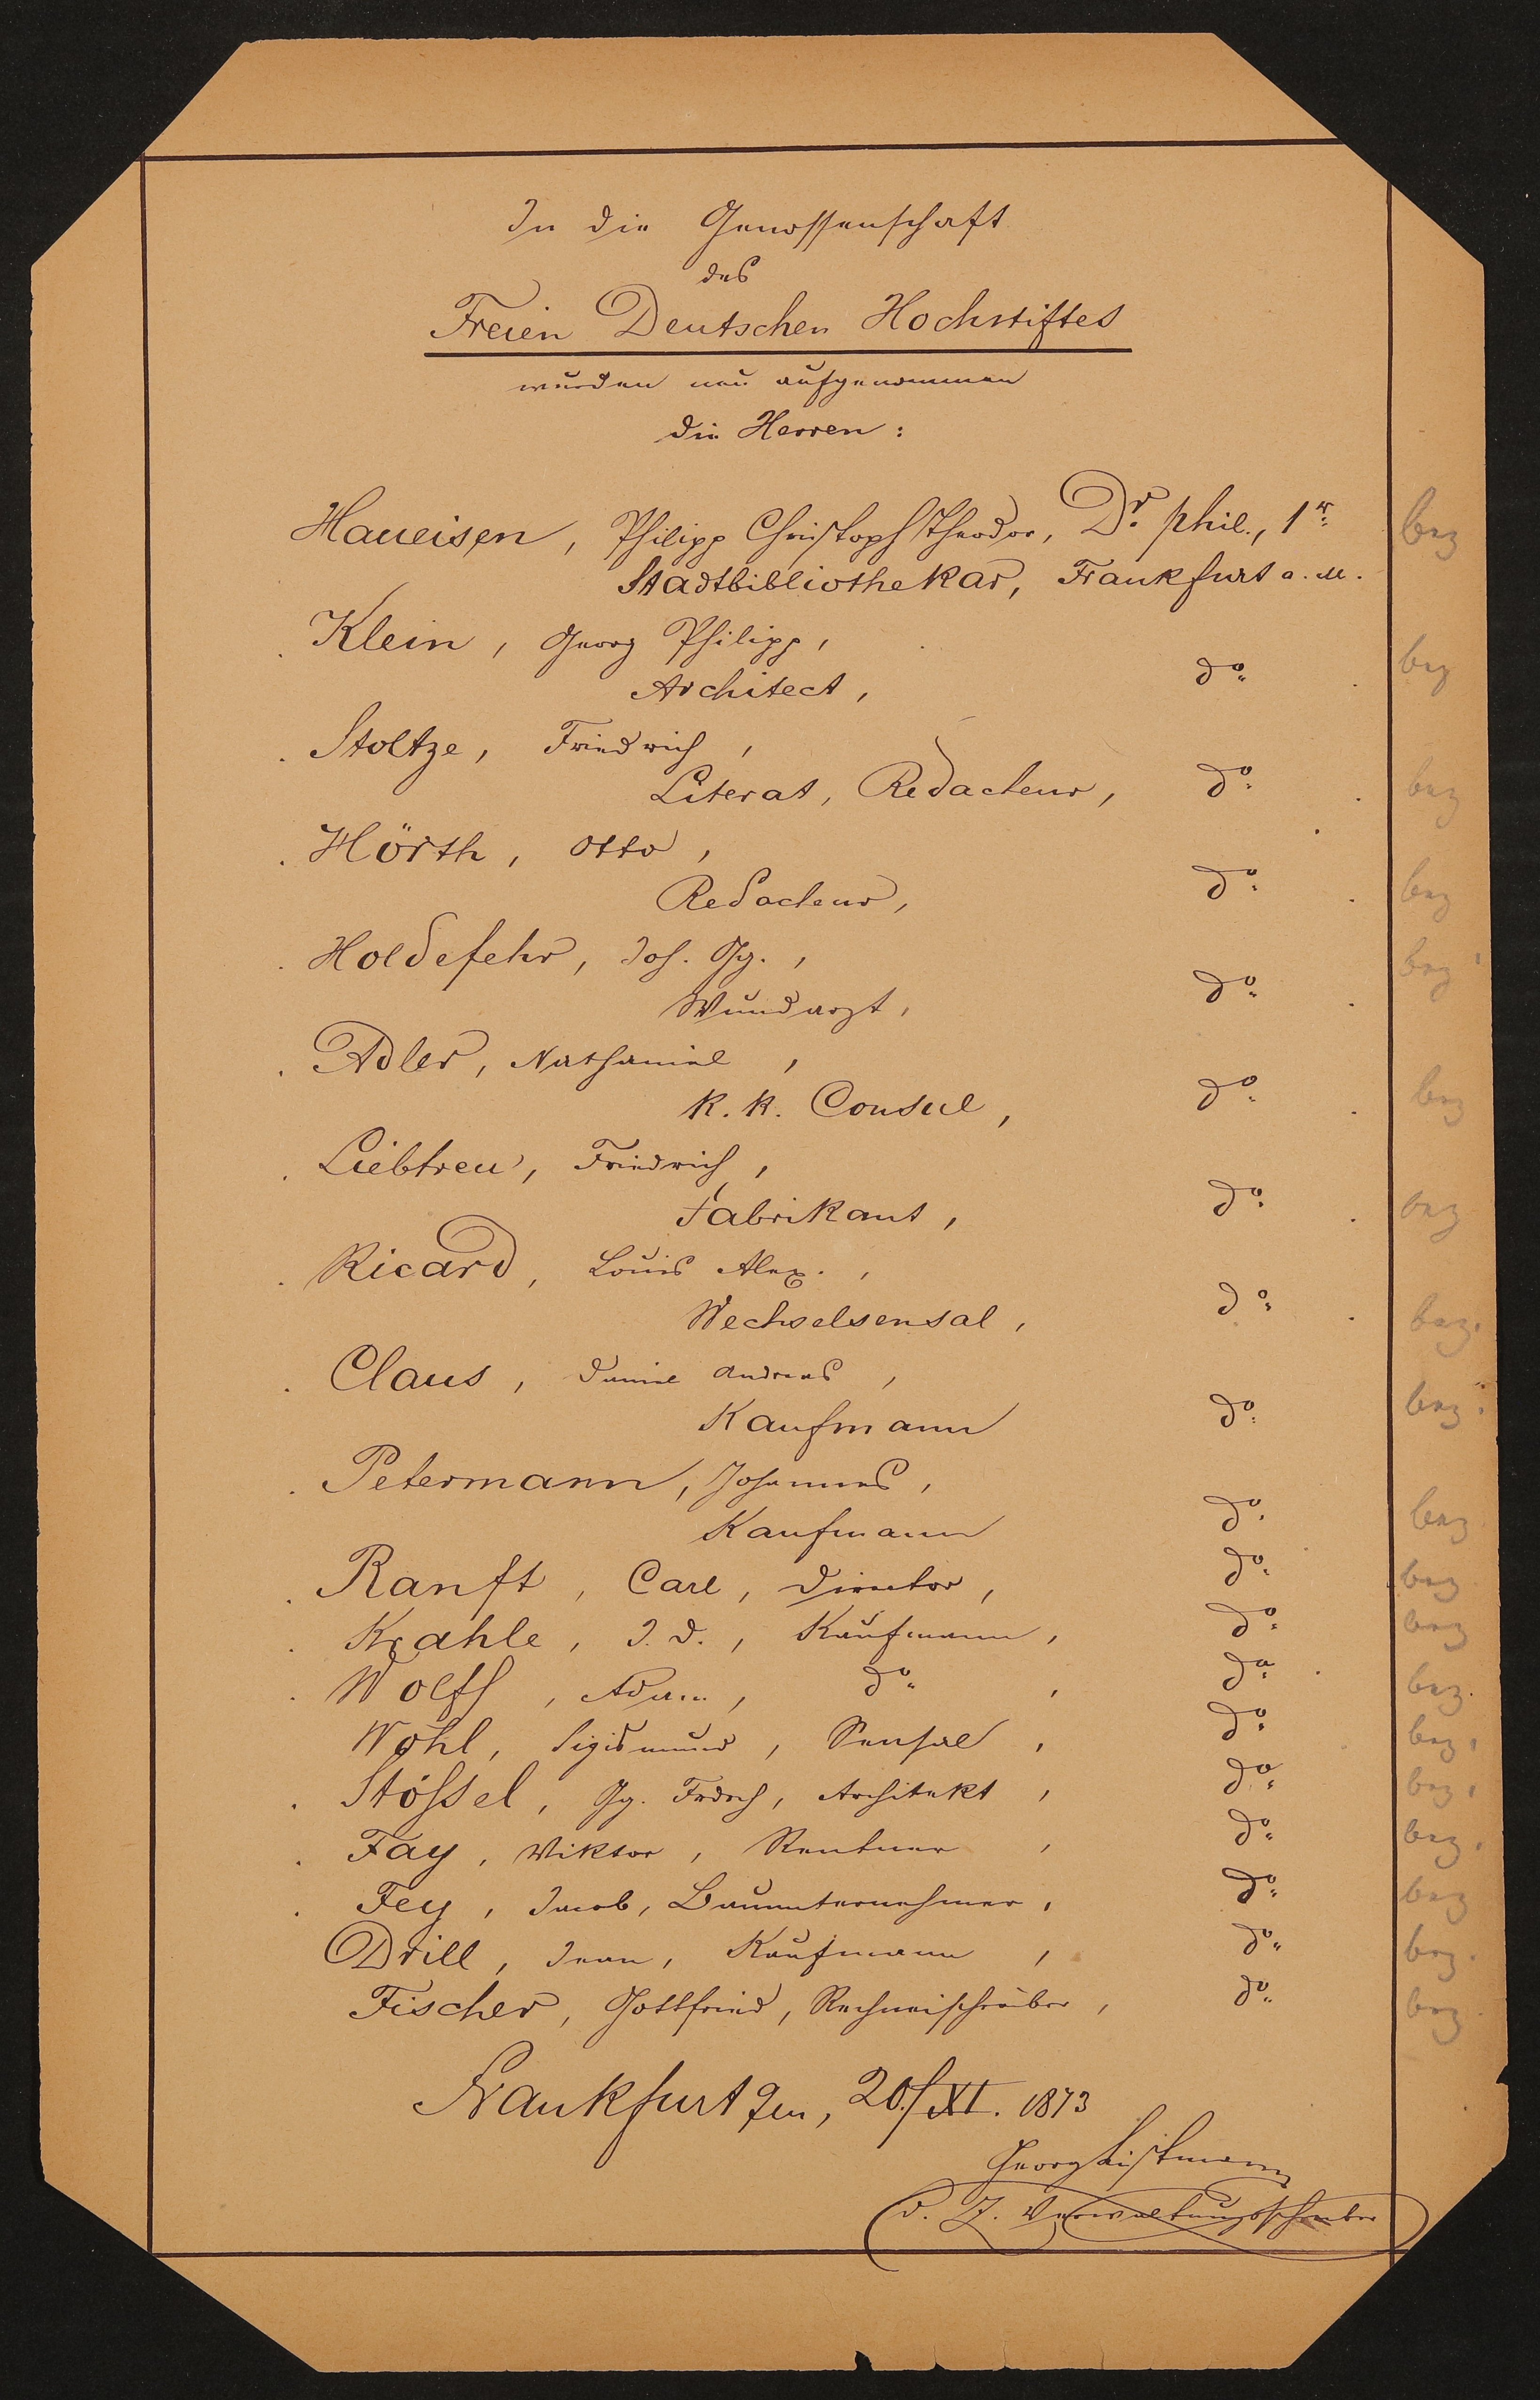 Liste "In die Genossenschaft des Freien Deutschen Hochstiftes wurden neu aufgenommen die Herren:..." (20.11.1873) (Freies Deutsches Hochstift / Frankfurter Goethe-Museum Public Domain Mark)